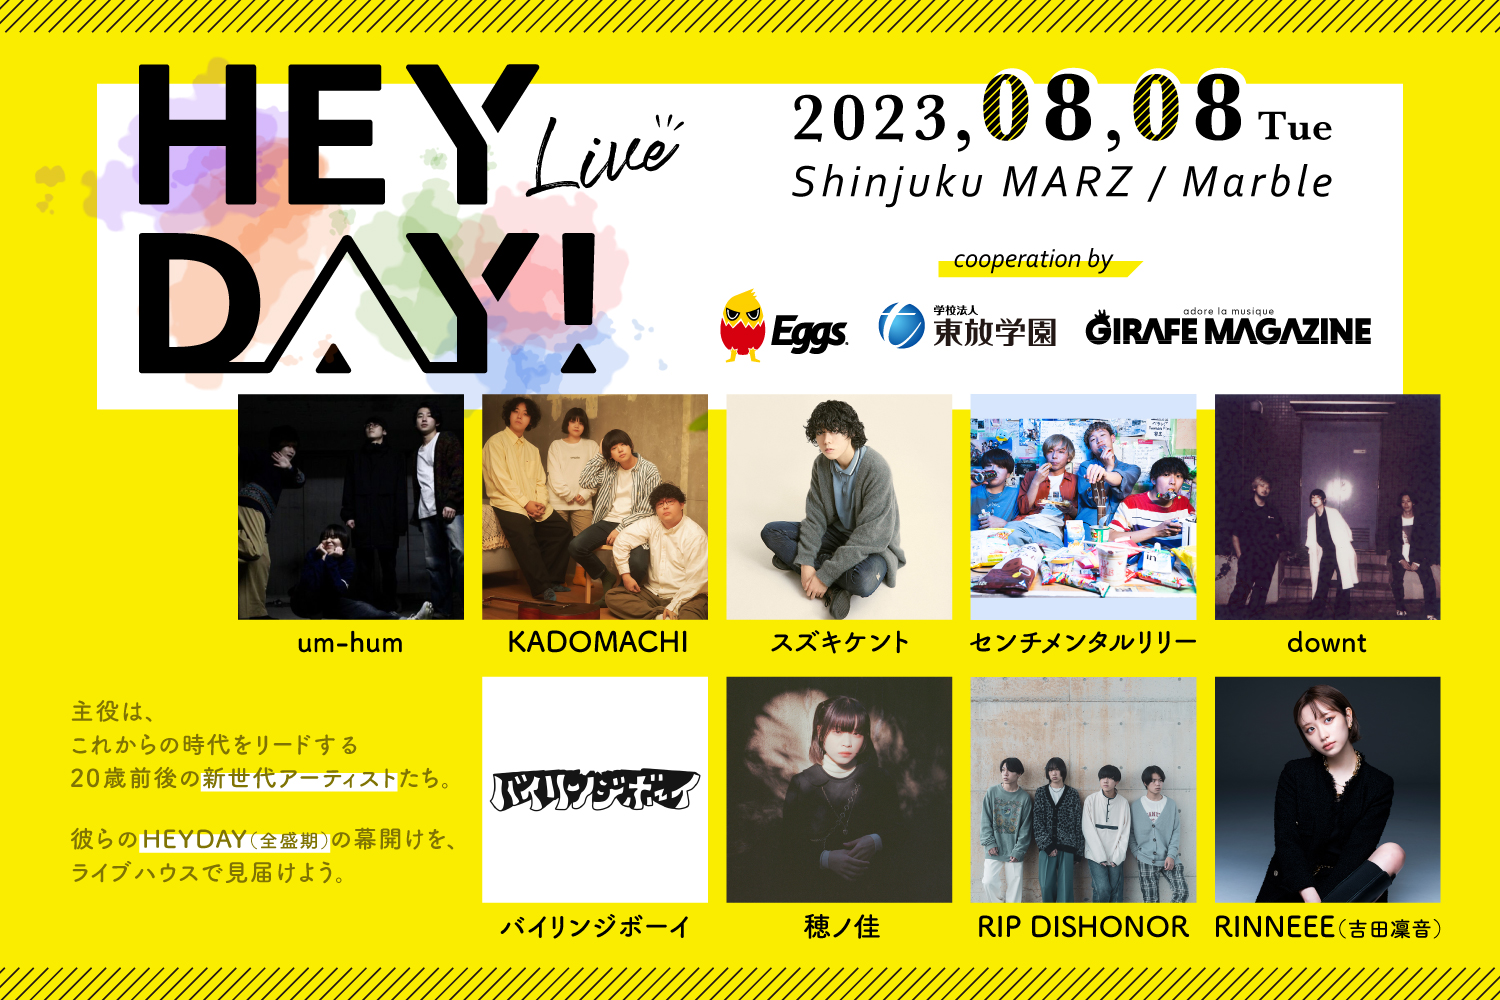 「《NEWS!》20歳前後のアーティストが集う新ライブイベント『HEYDAY!』、8/8に新宿MARZ / Marbleで初開催」のアイキャッチ画像